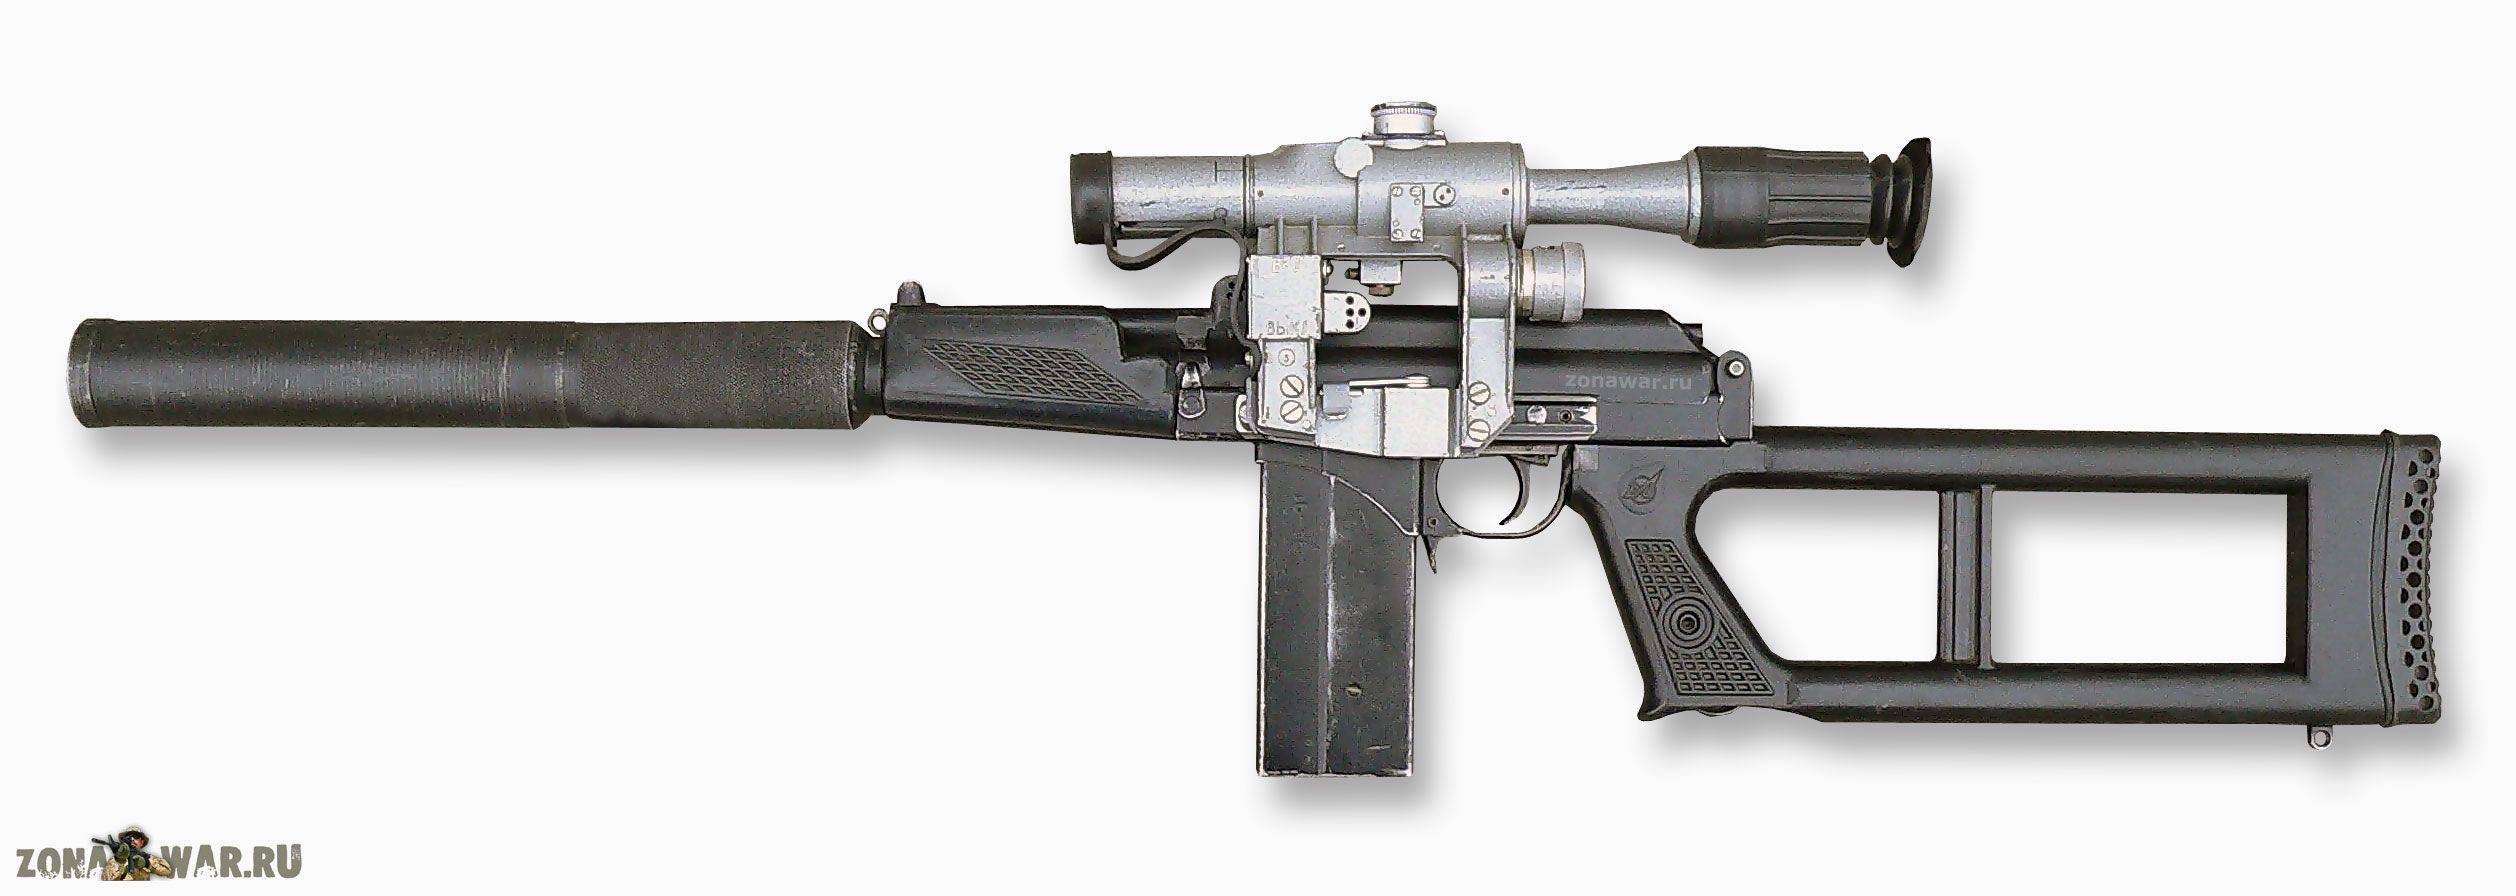 Снайперская винтовка вск-94